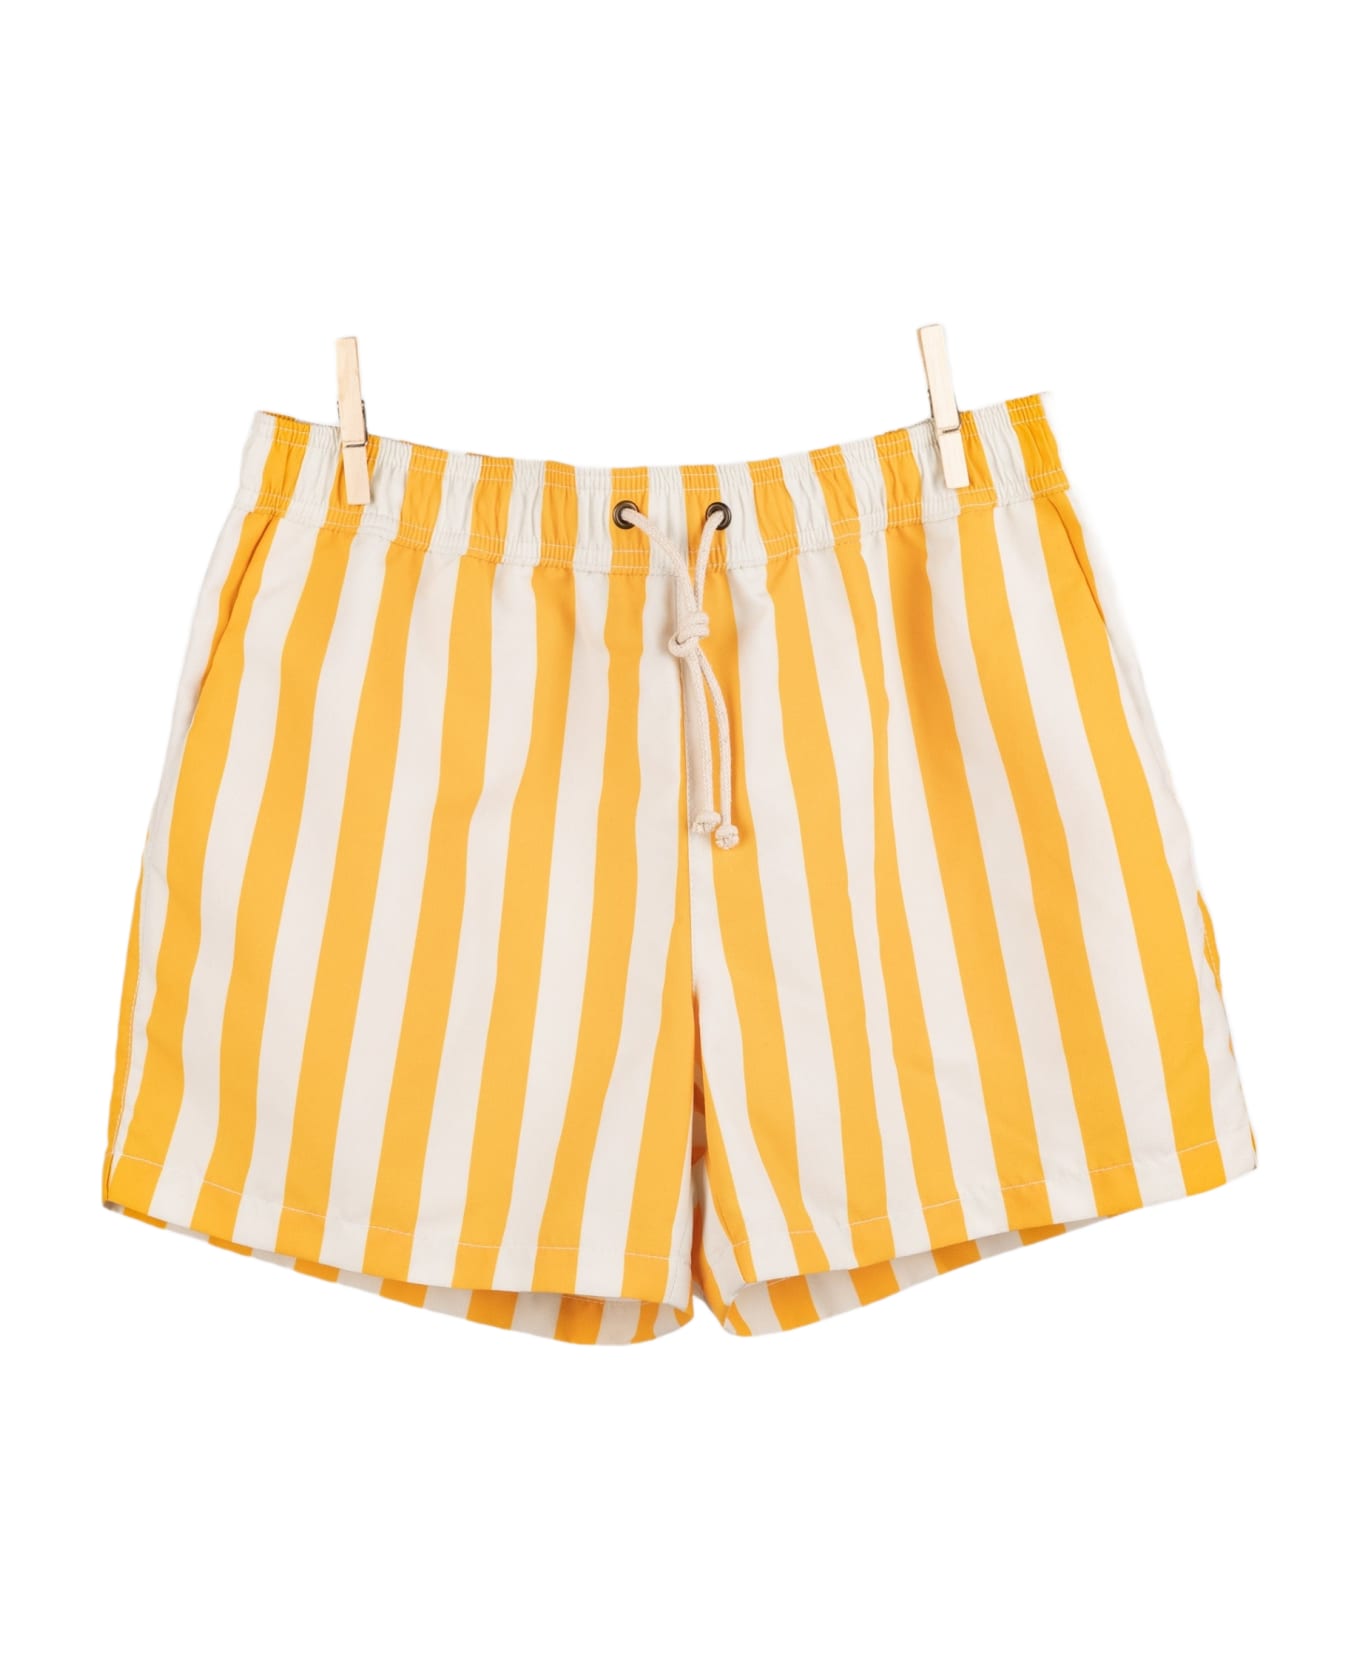 Ripa Ripa Paraggi Giallo Swim Shorts - Yellow